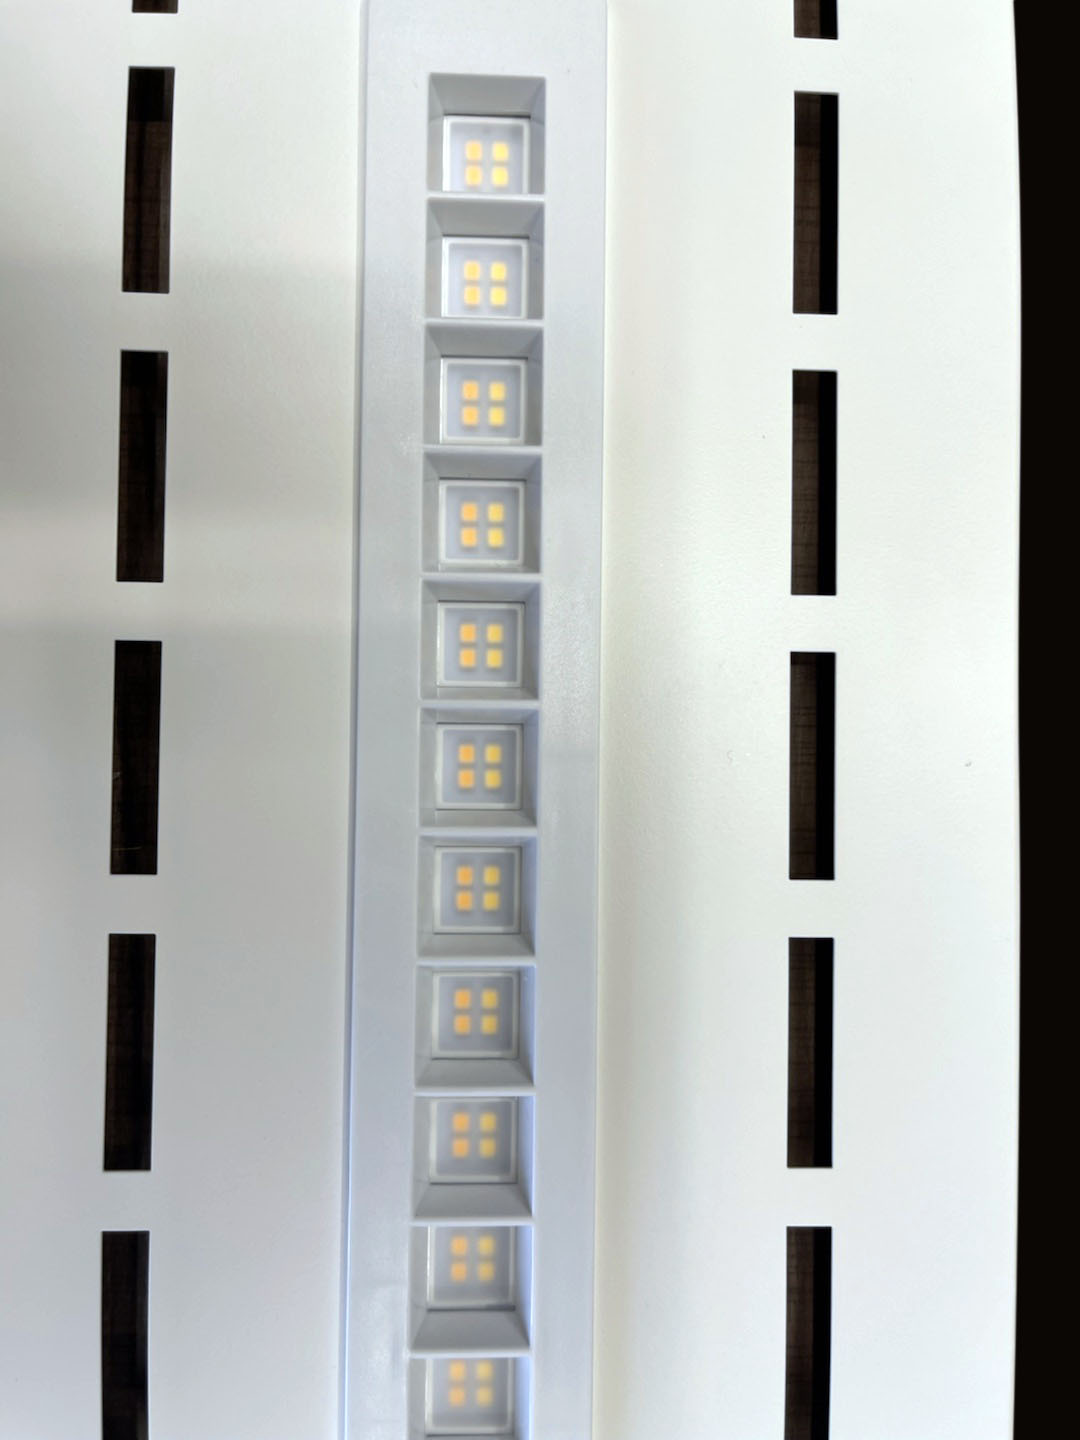 SIN LGP, instalación diferente, los módulos de lámpara son extraíbles y reemplazables, lo que reduce la luz del panel LED del inventario del distribuidor